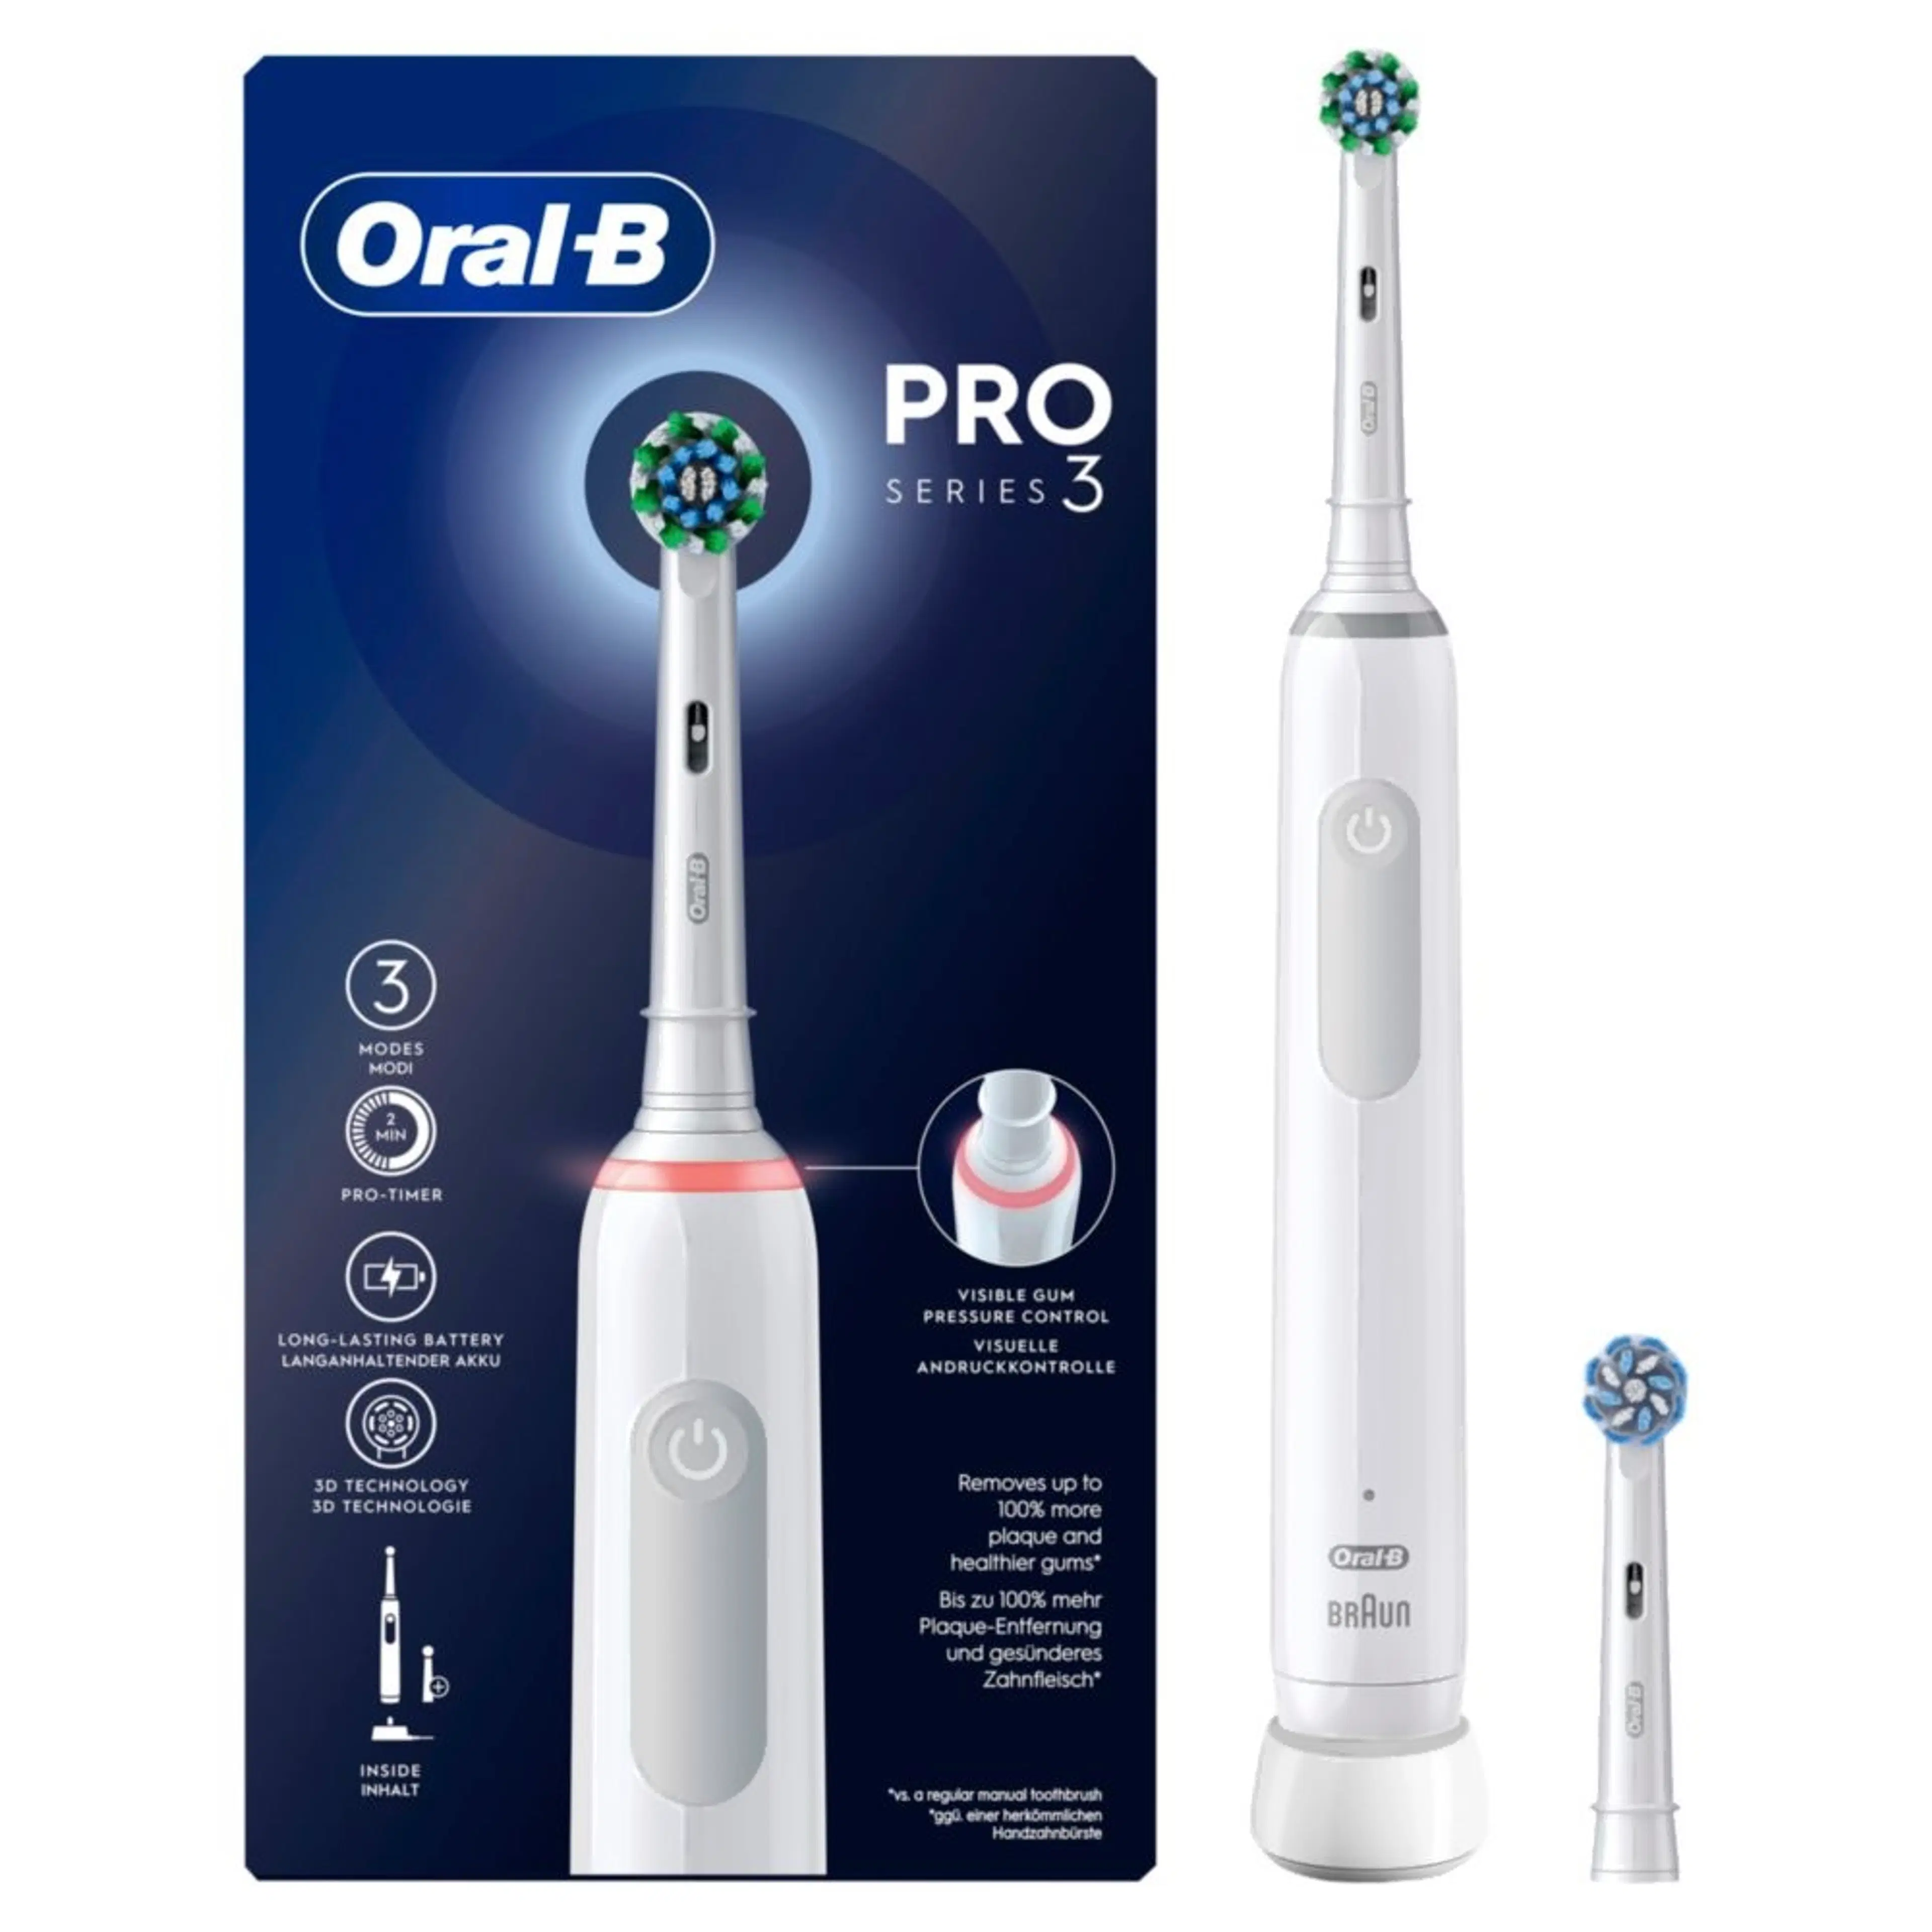 Oral-B Pro Series 3 Valkoinen sähköhammasharja Braun-tekniikalla